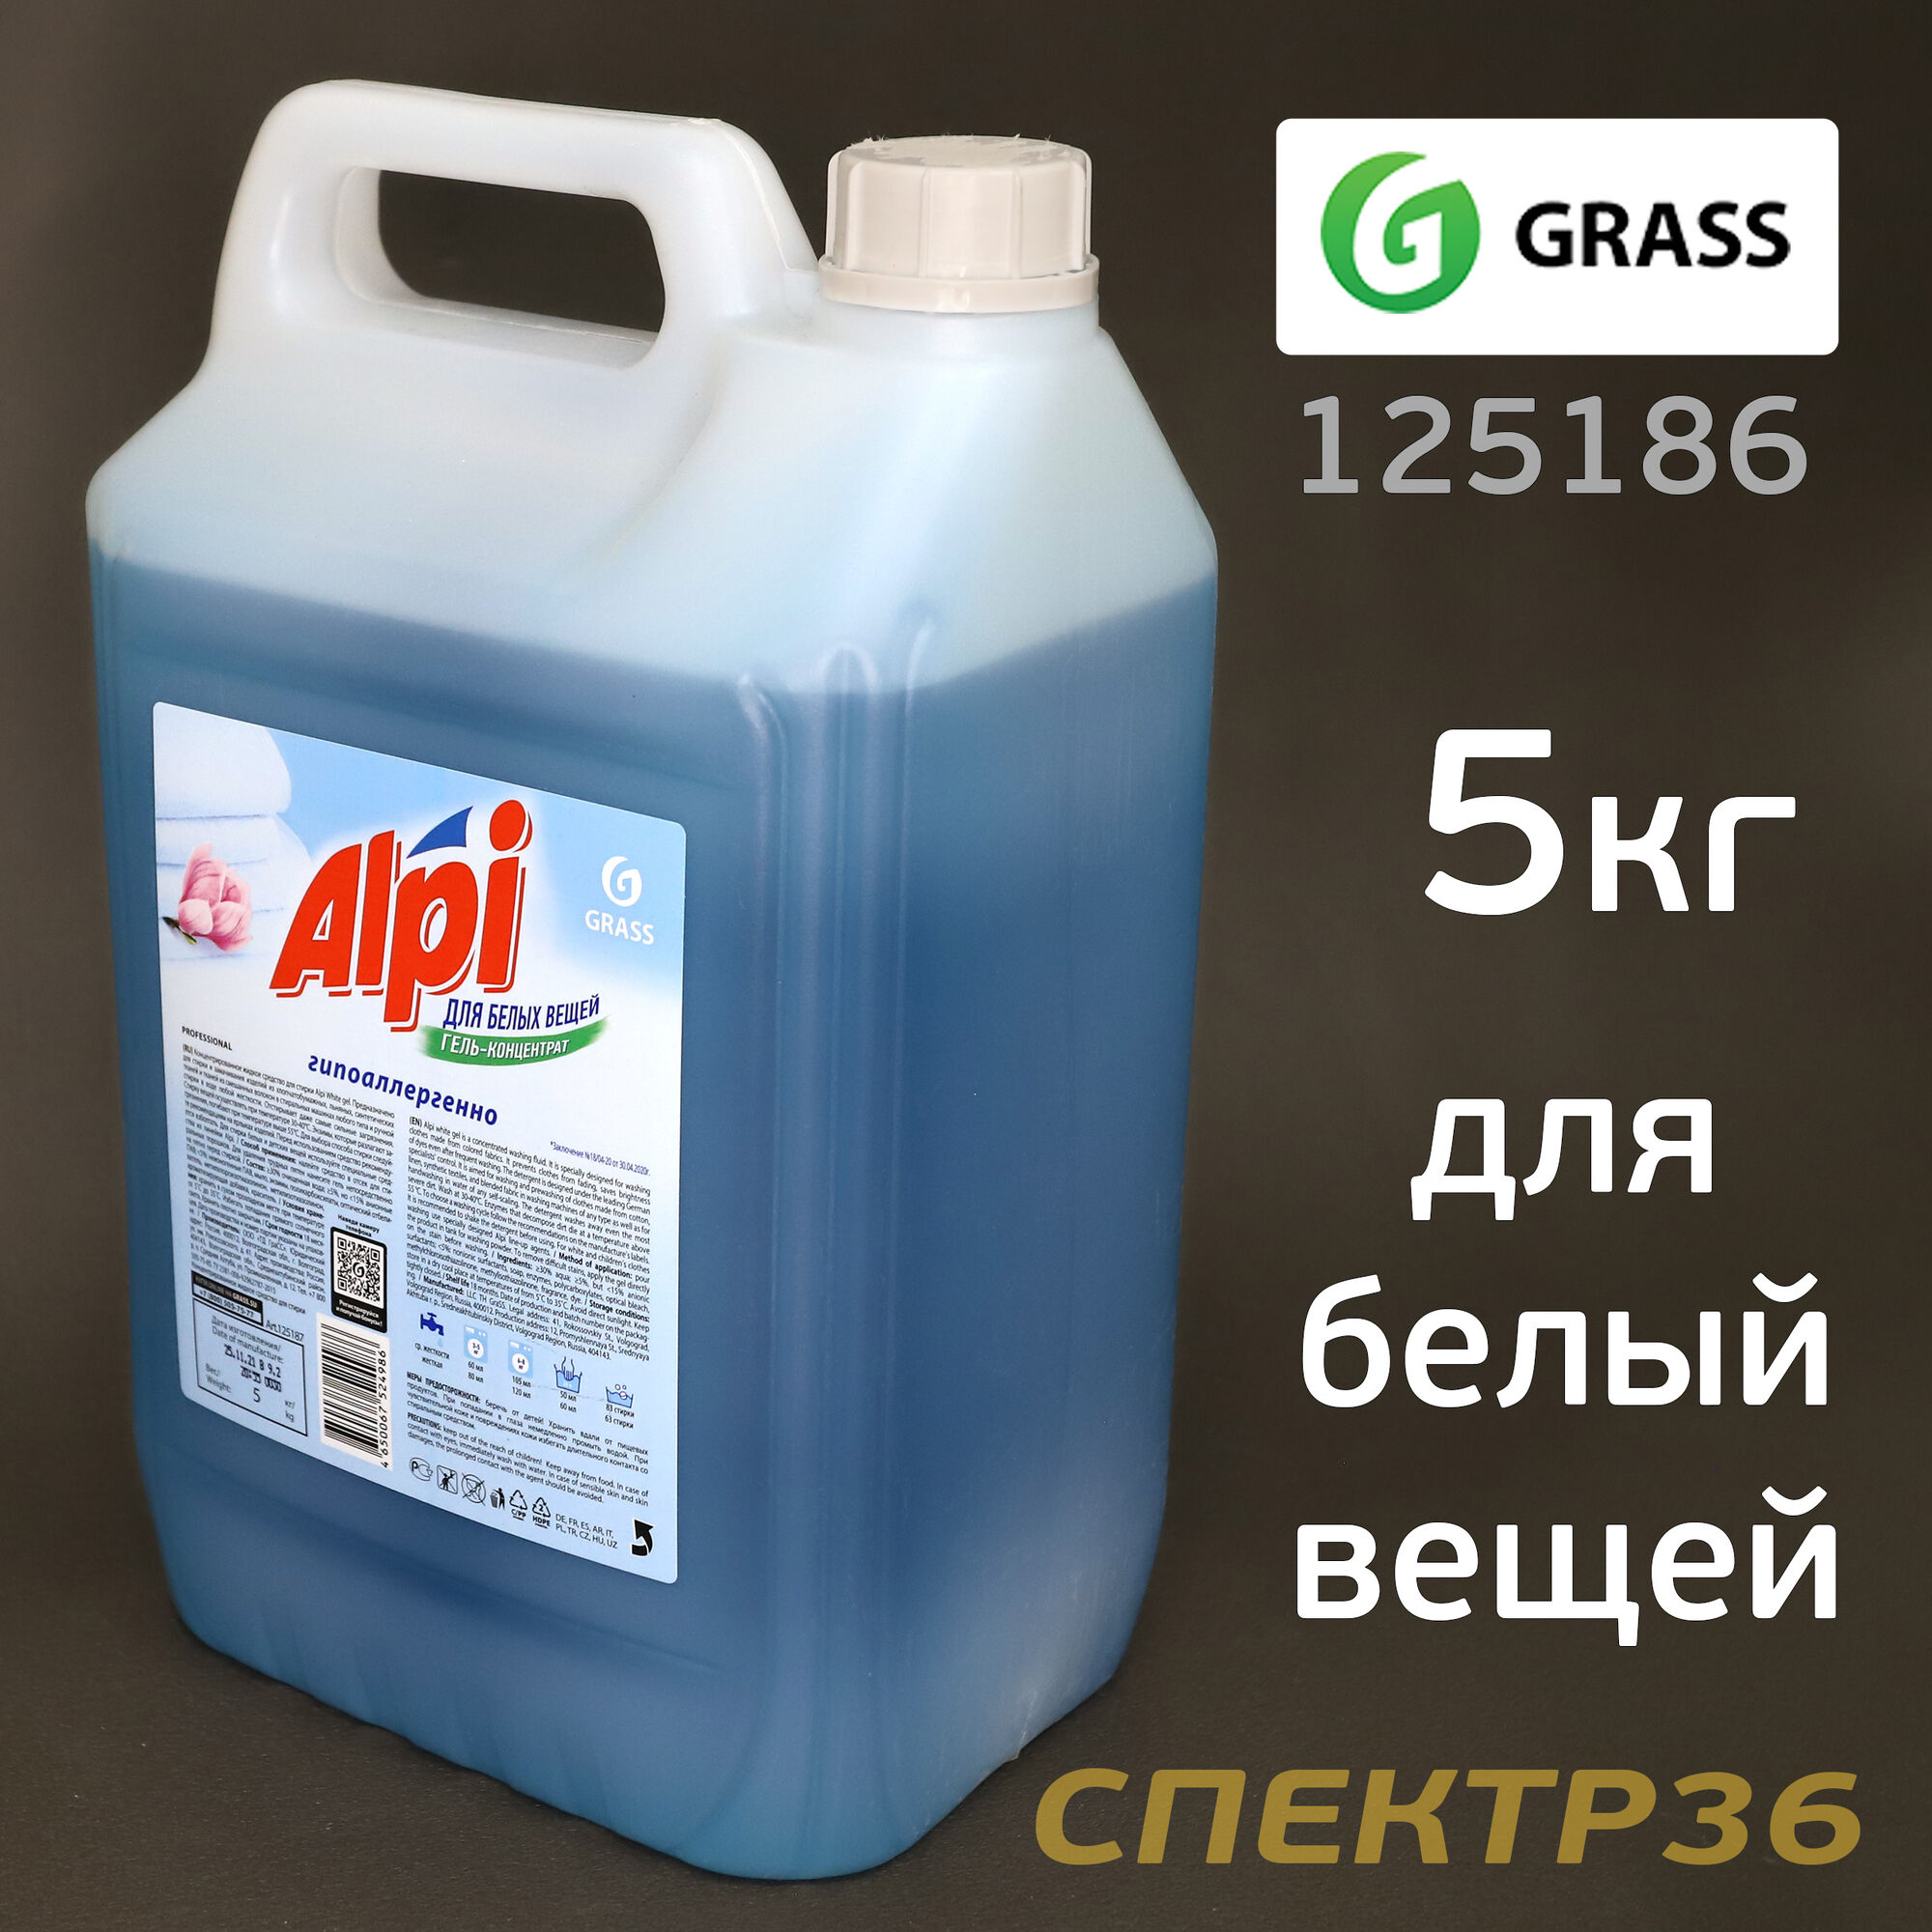 Гель для стирки GRASS ALPI (5кг) для белых вещей 2